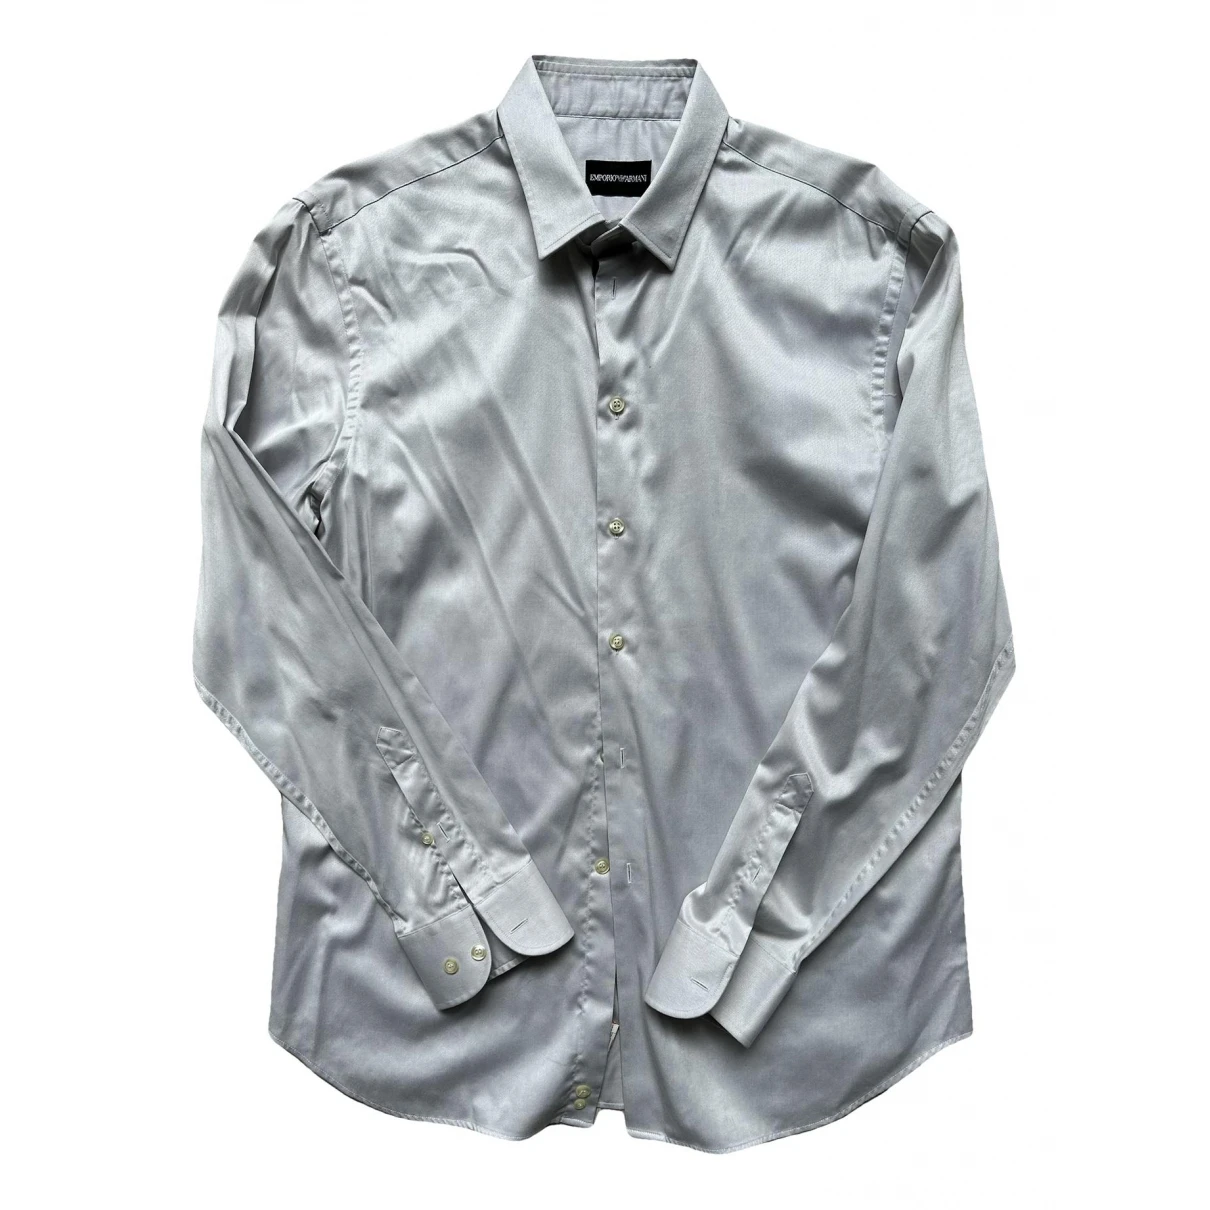 clothing Emporio Armani shirts for Male Cotton 43 EU (tour de cou / collar). Used condition